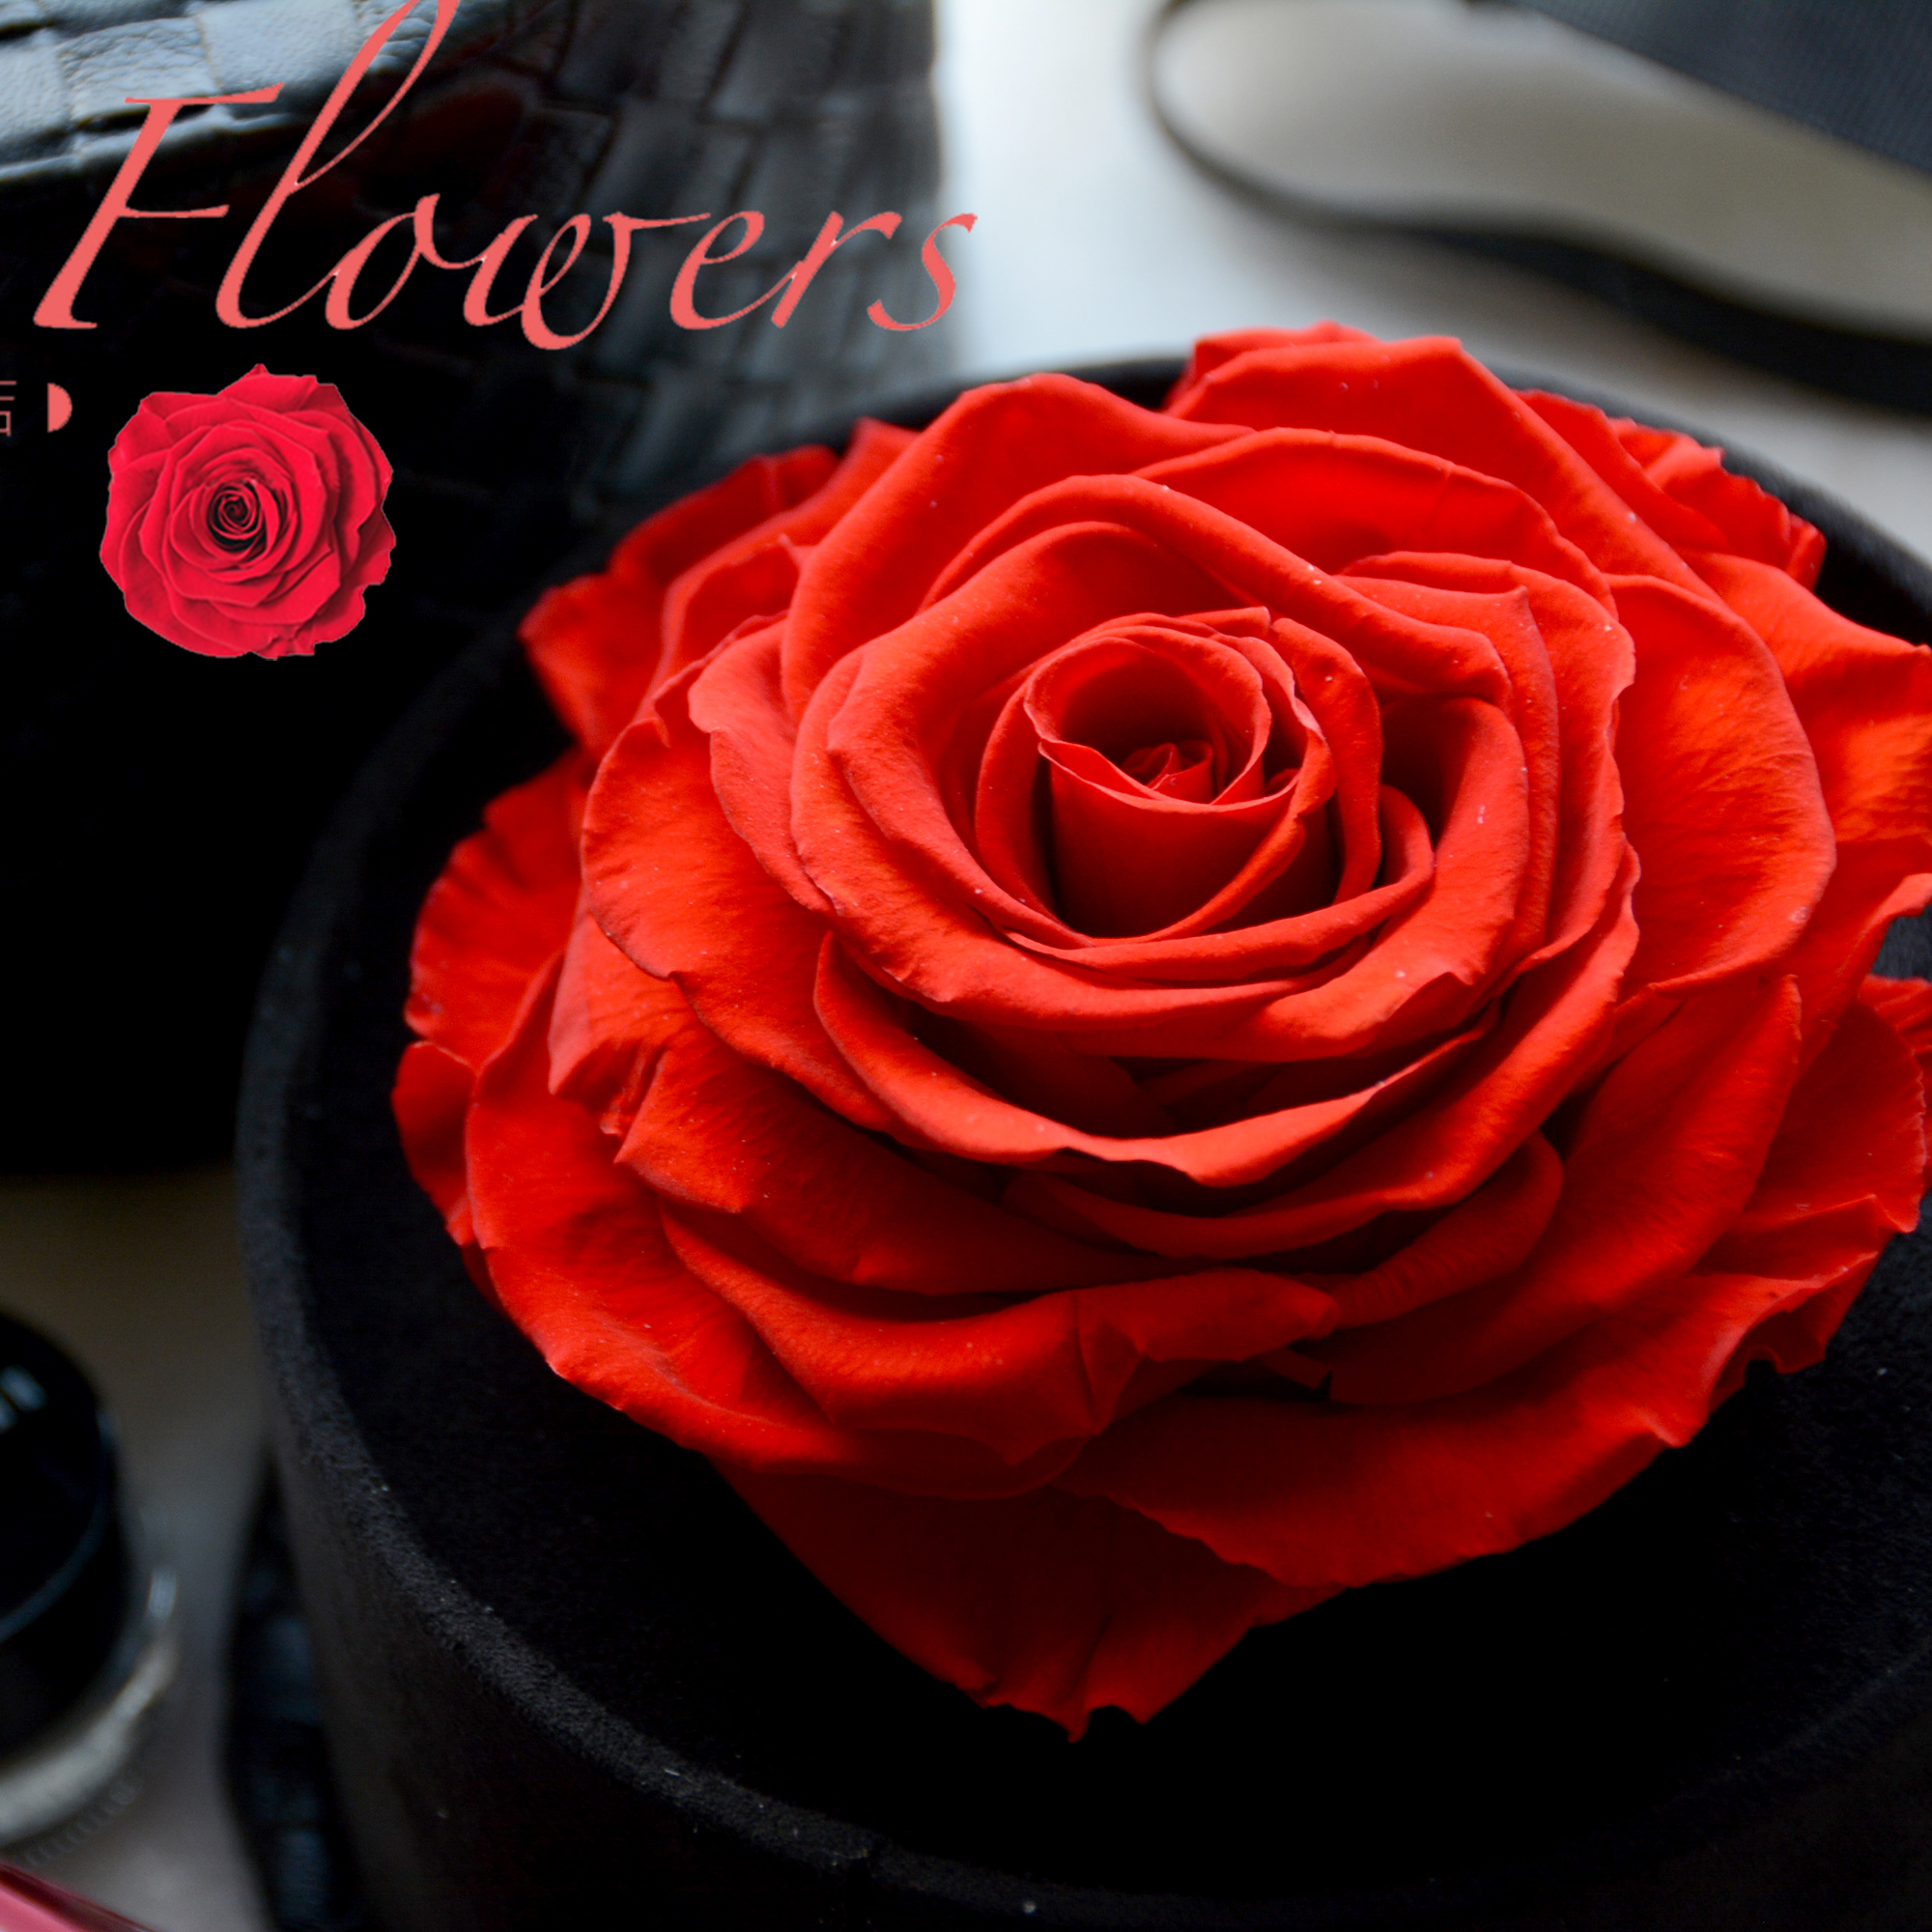 厄瓜多尔进口巨型永生玫瑰,直径足10cm,皮质蔷薇花礼盒包装